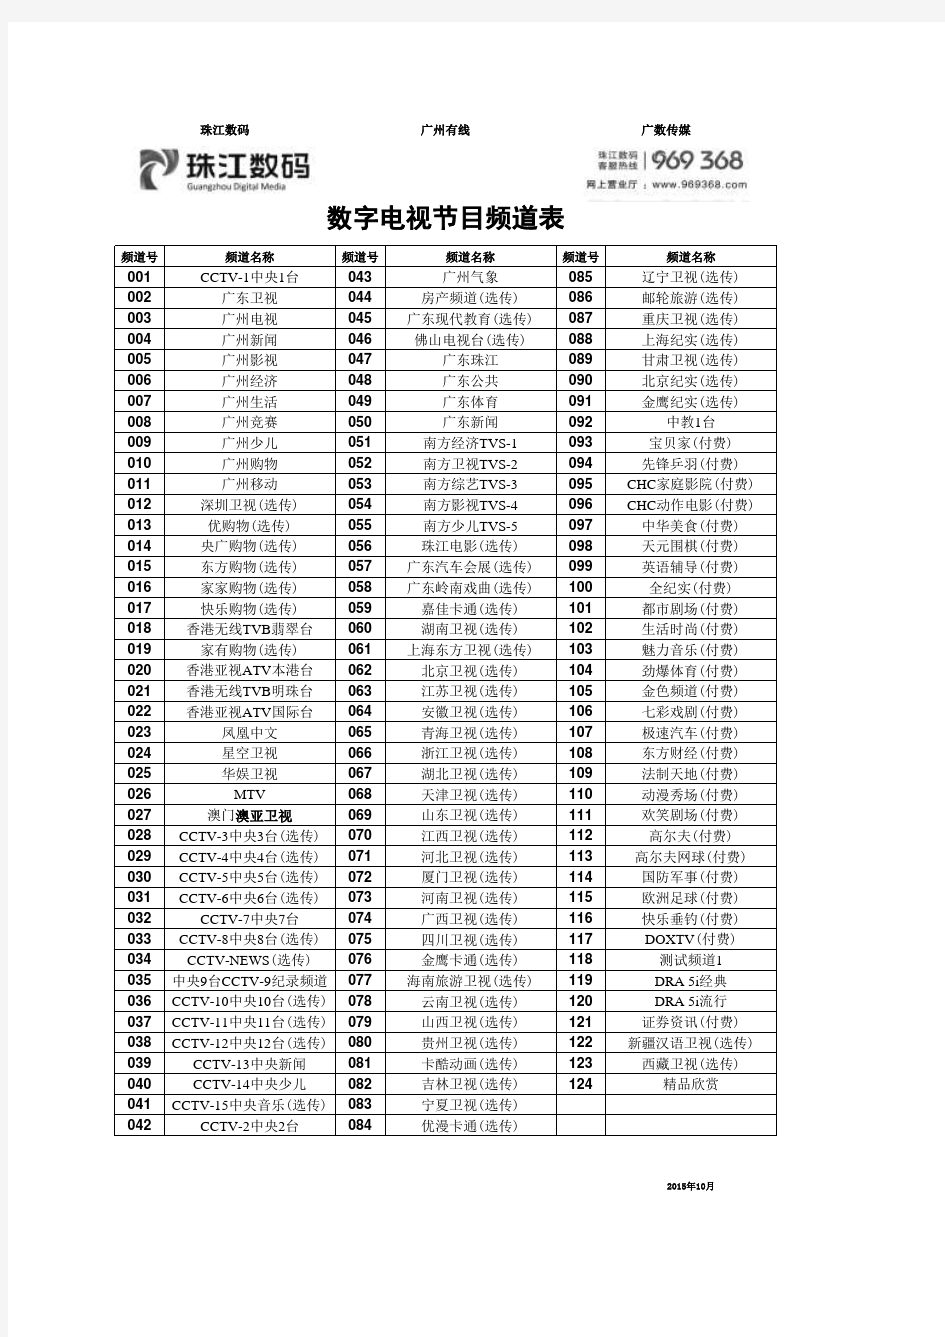 2015年10月广州市有线珠江数码数字电视频道节目列表